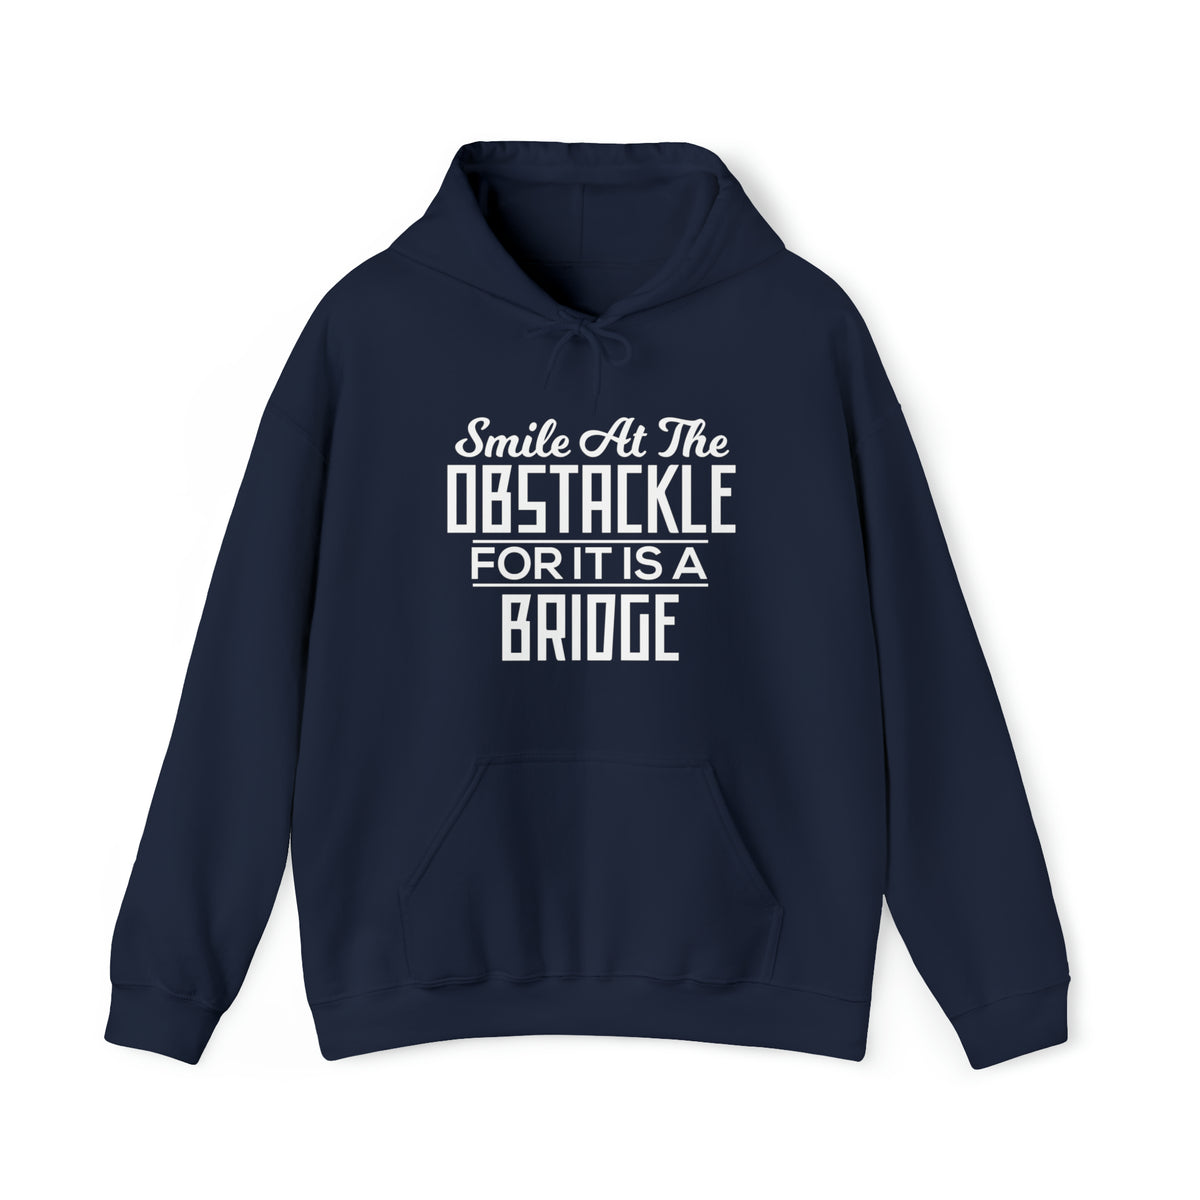 It Is A Bridge Unisex Hoodie